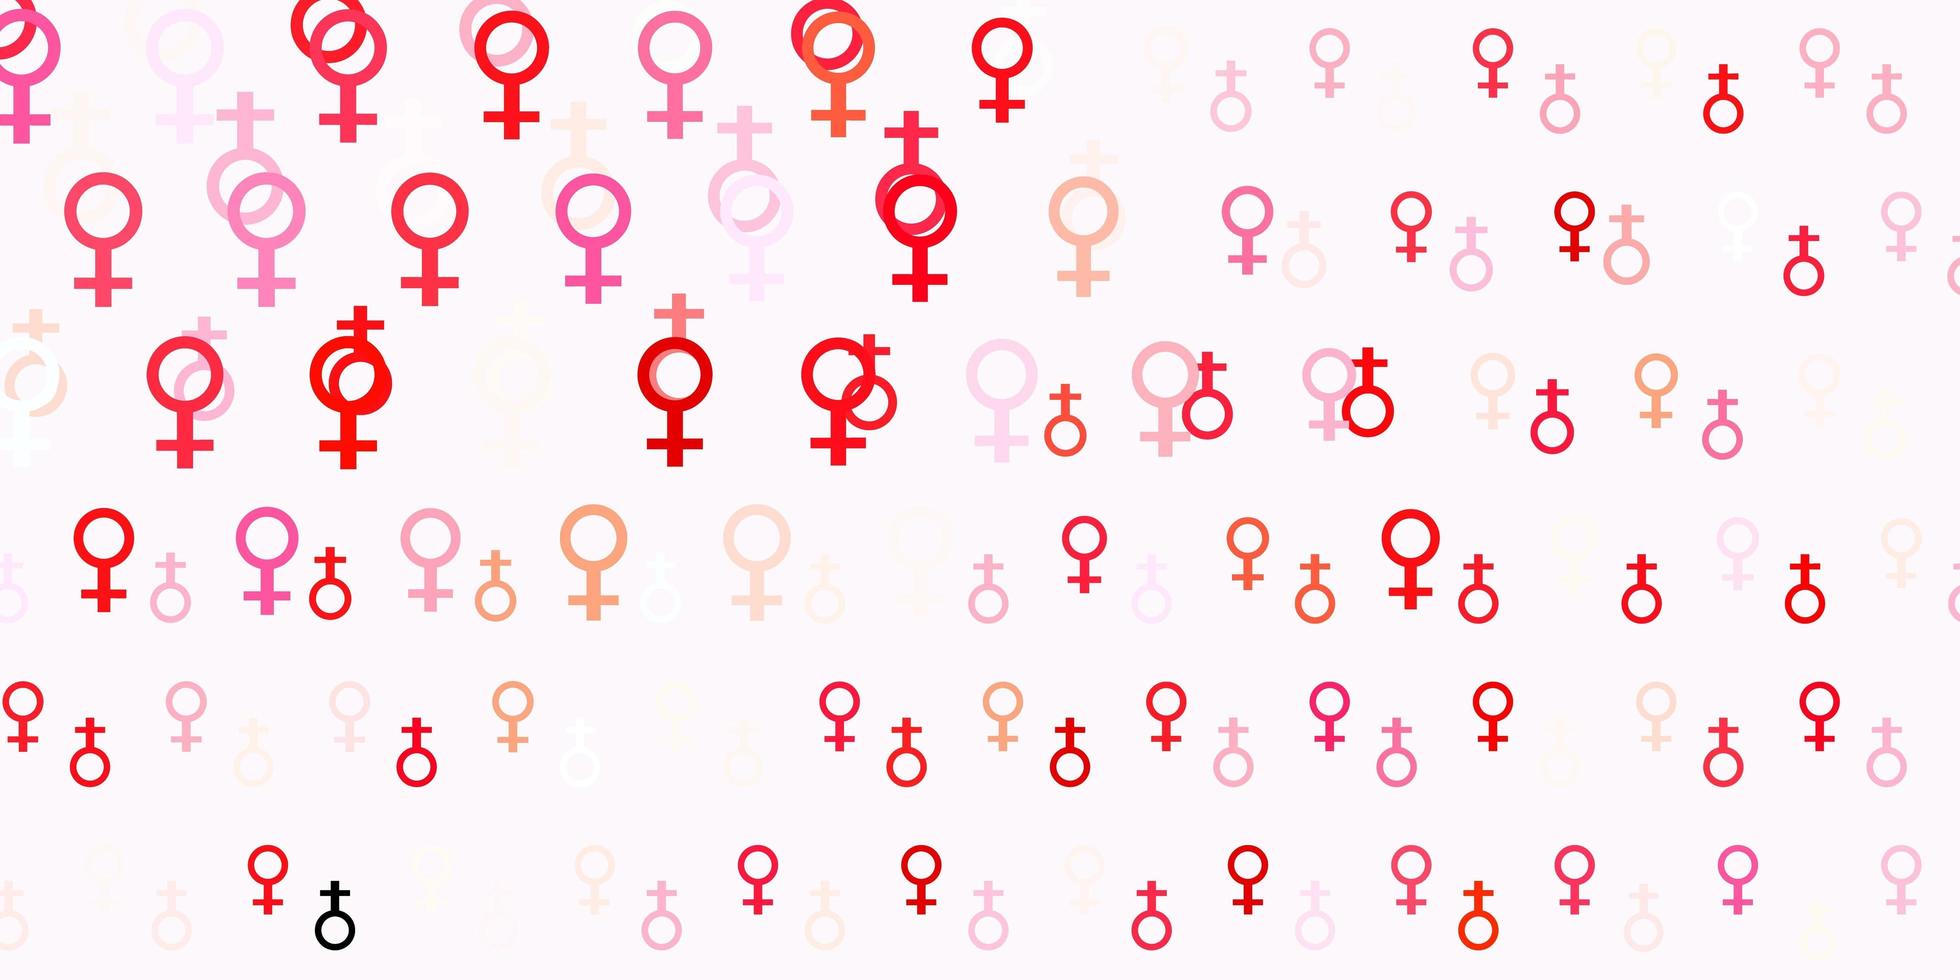 pano de fundo vector vermelho claro com símbolos de poder feminino